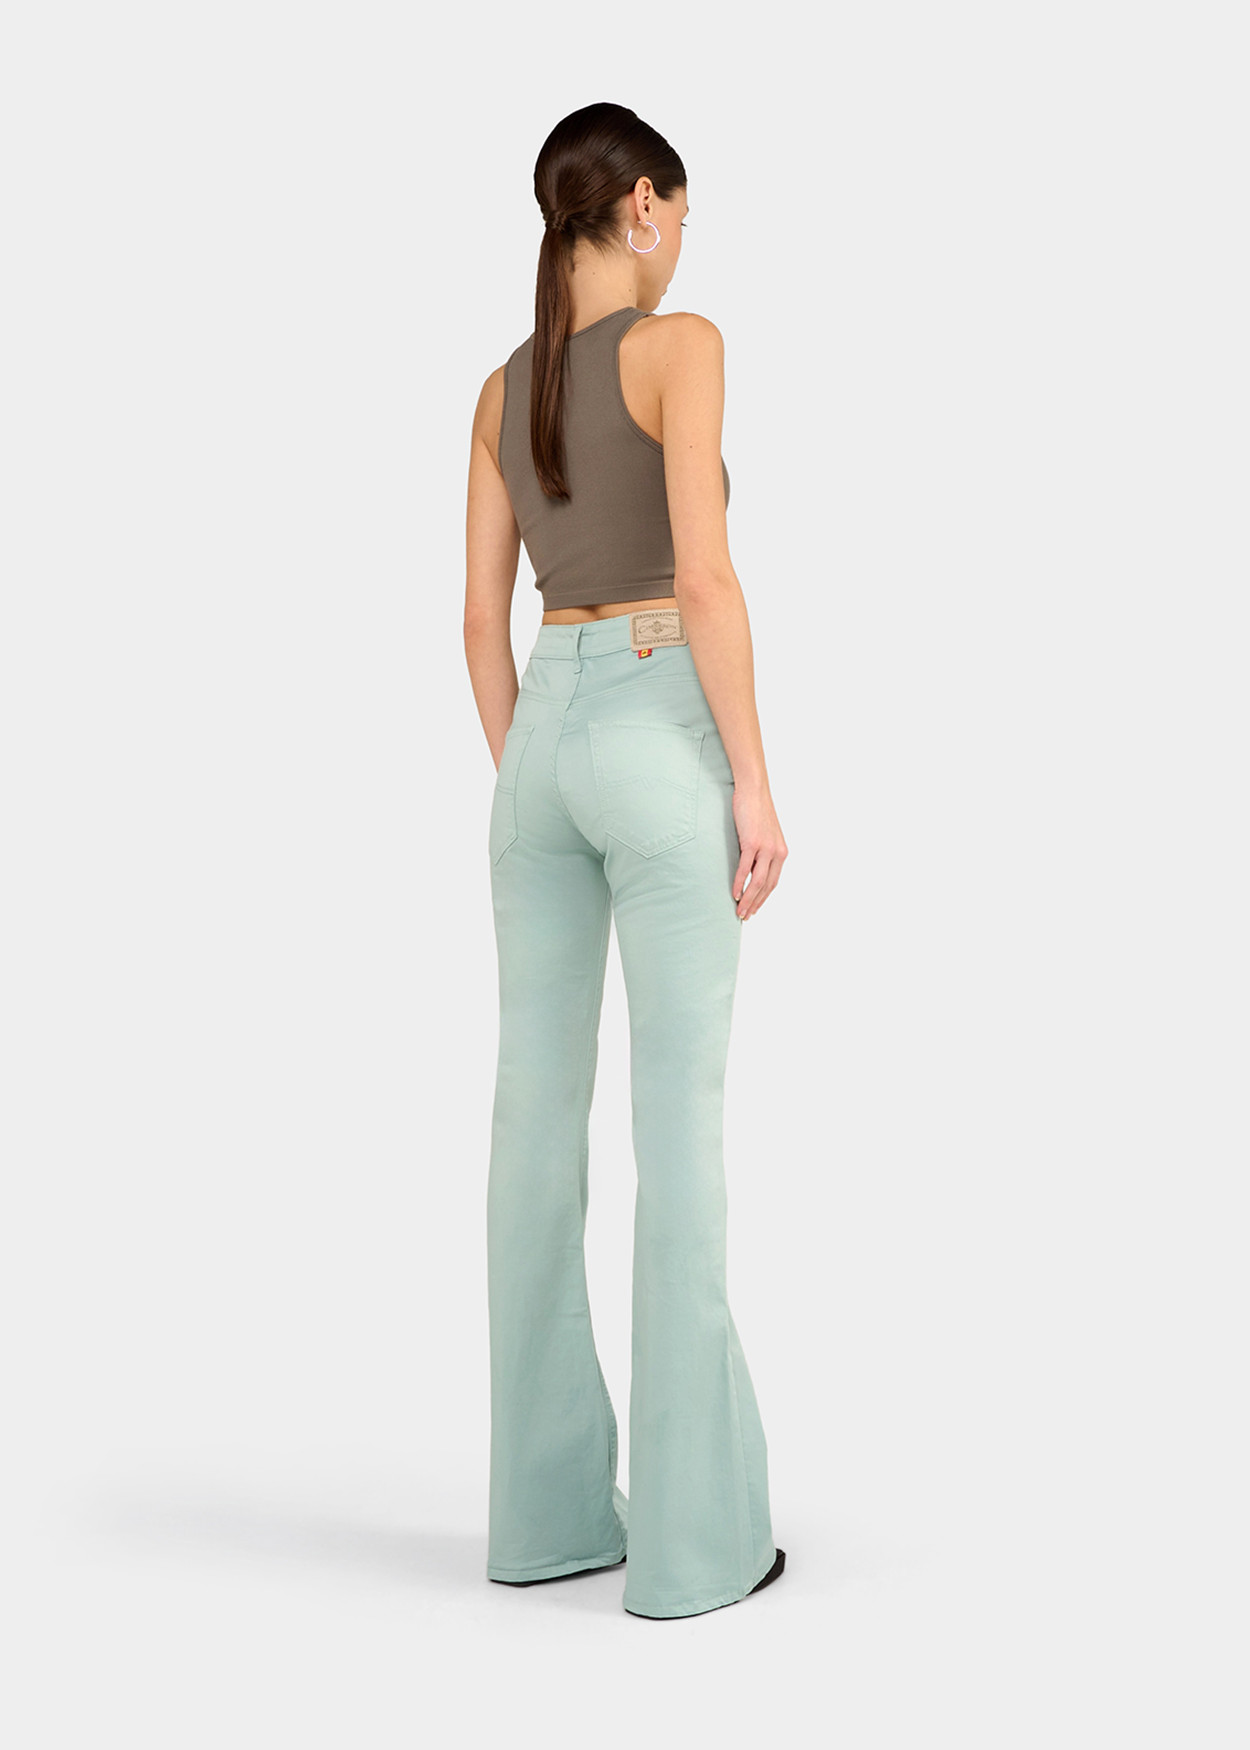 CARLA-NECTAR - Pantalon de couleur - Pantalon évasé - Short long en satin élastique | Tailles en pouces Cimarron